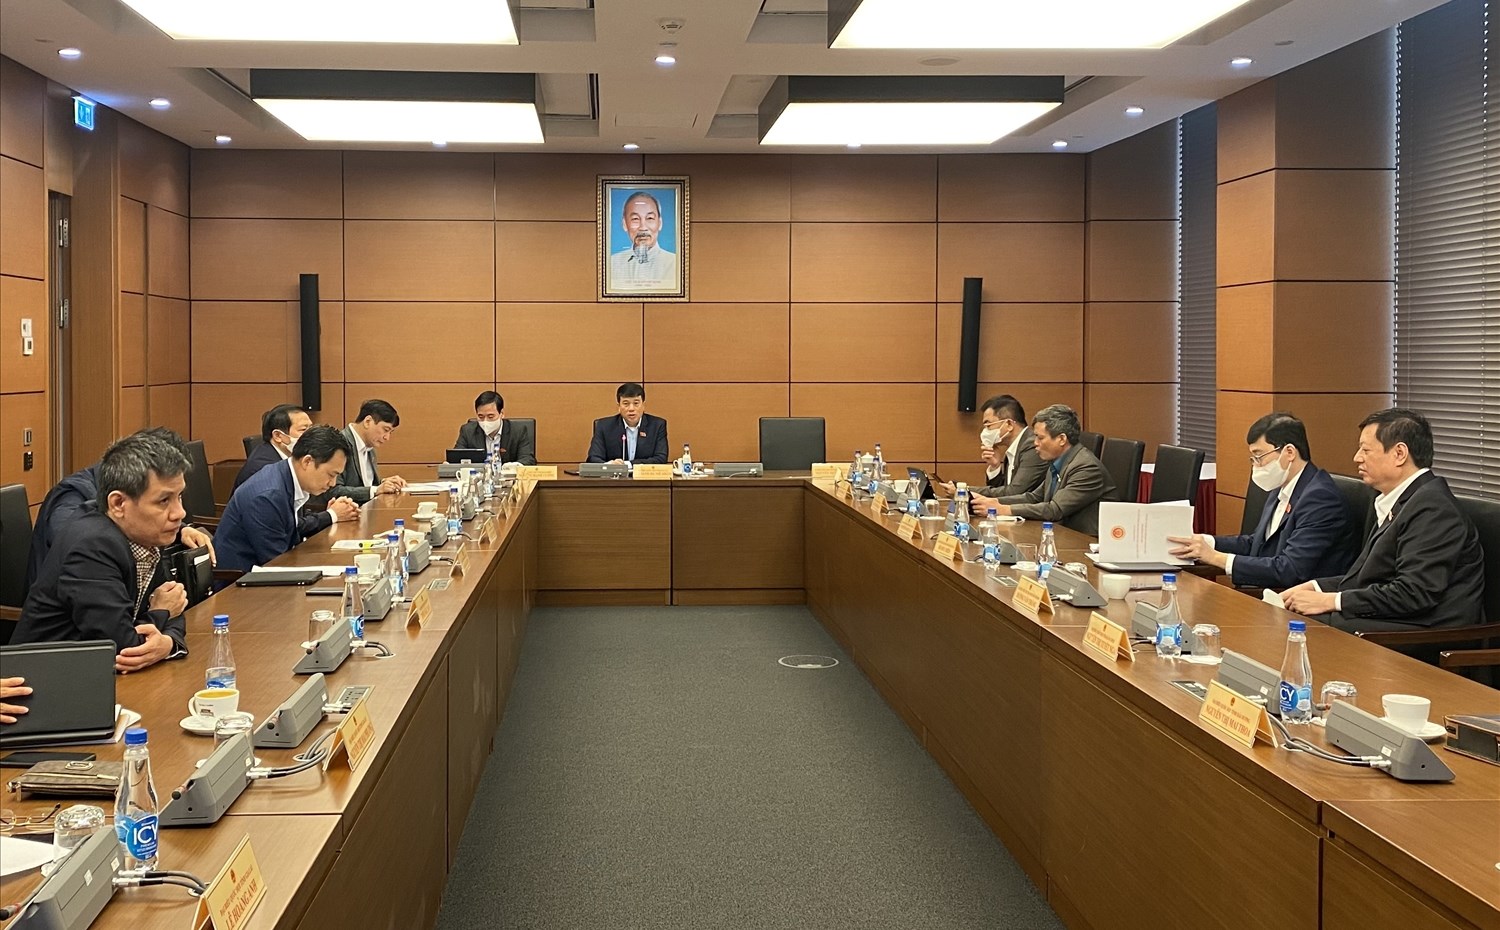 Các đại biểu Quốc hội thảo luận ở tổ về Dự thảo Nghị quyết về một số cơ chế, chính sách đặc thù phát triển các tỉnh, thành phố Hải Phòng, Nghệ An, Thanh Hóa, Thừa Thiên Huế